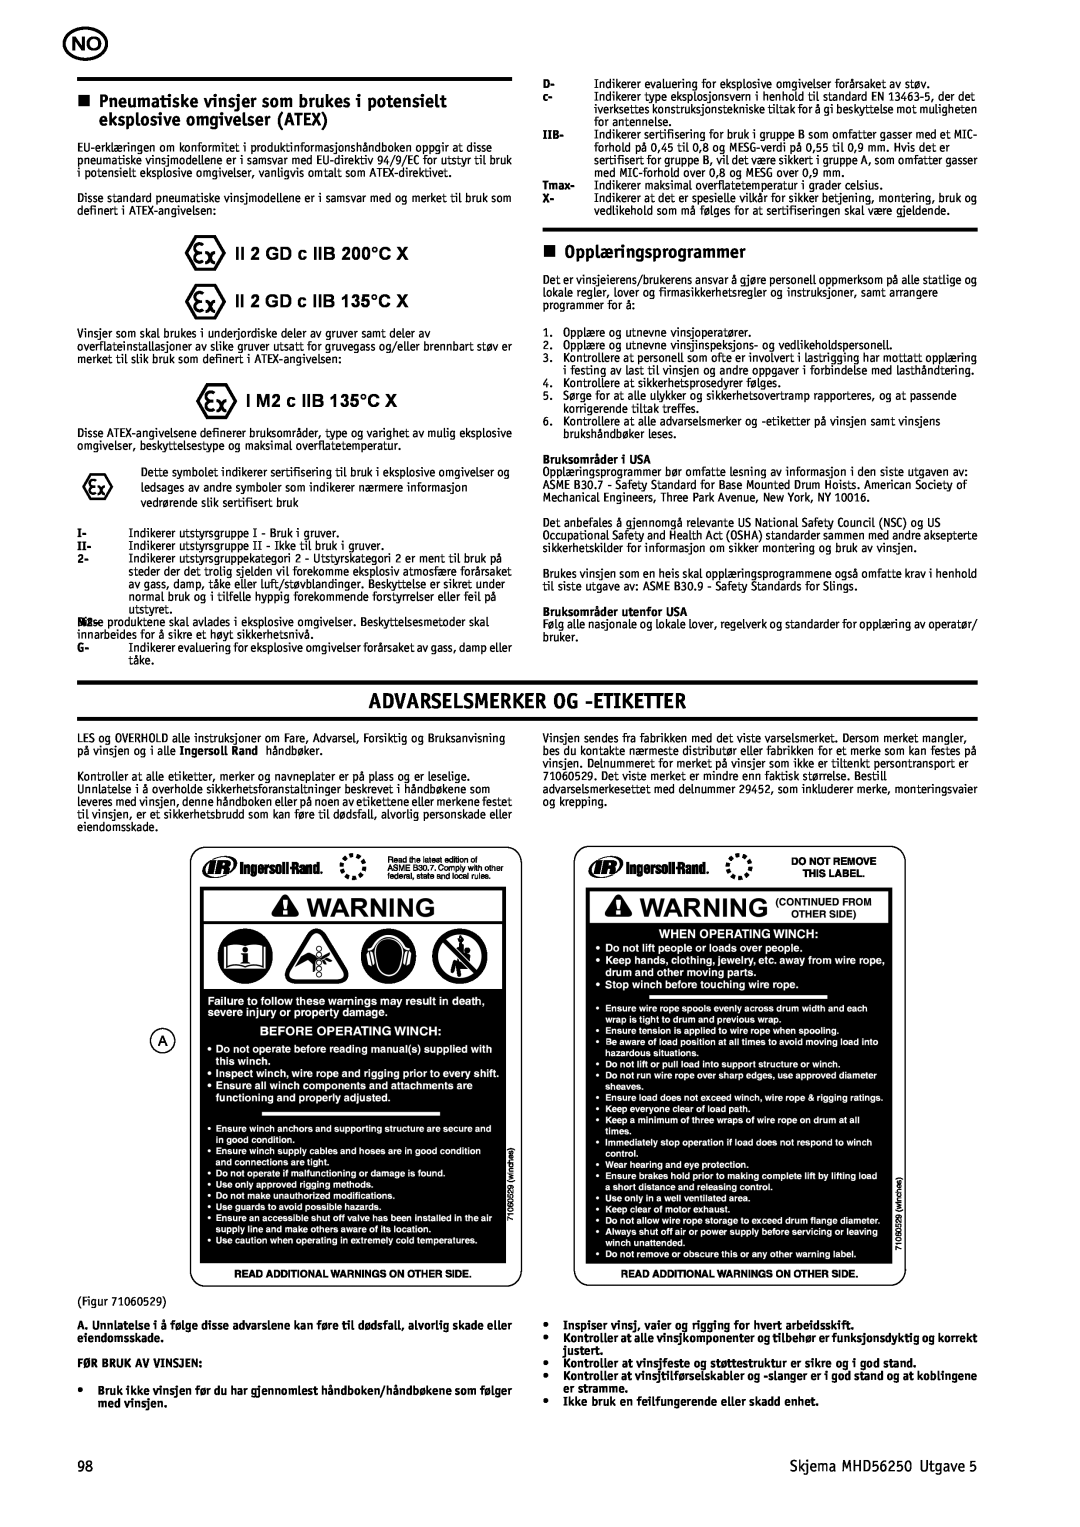 Ingersoll-Rand MHD56250 manual Advarselsmerker Og -Etiketter, II 2 GD c IIB 200C II 2 GD c IIB 135C, I M2 c IIB 135C 